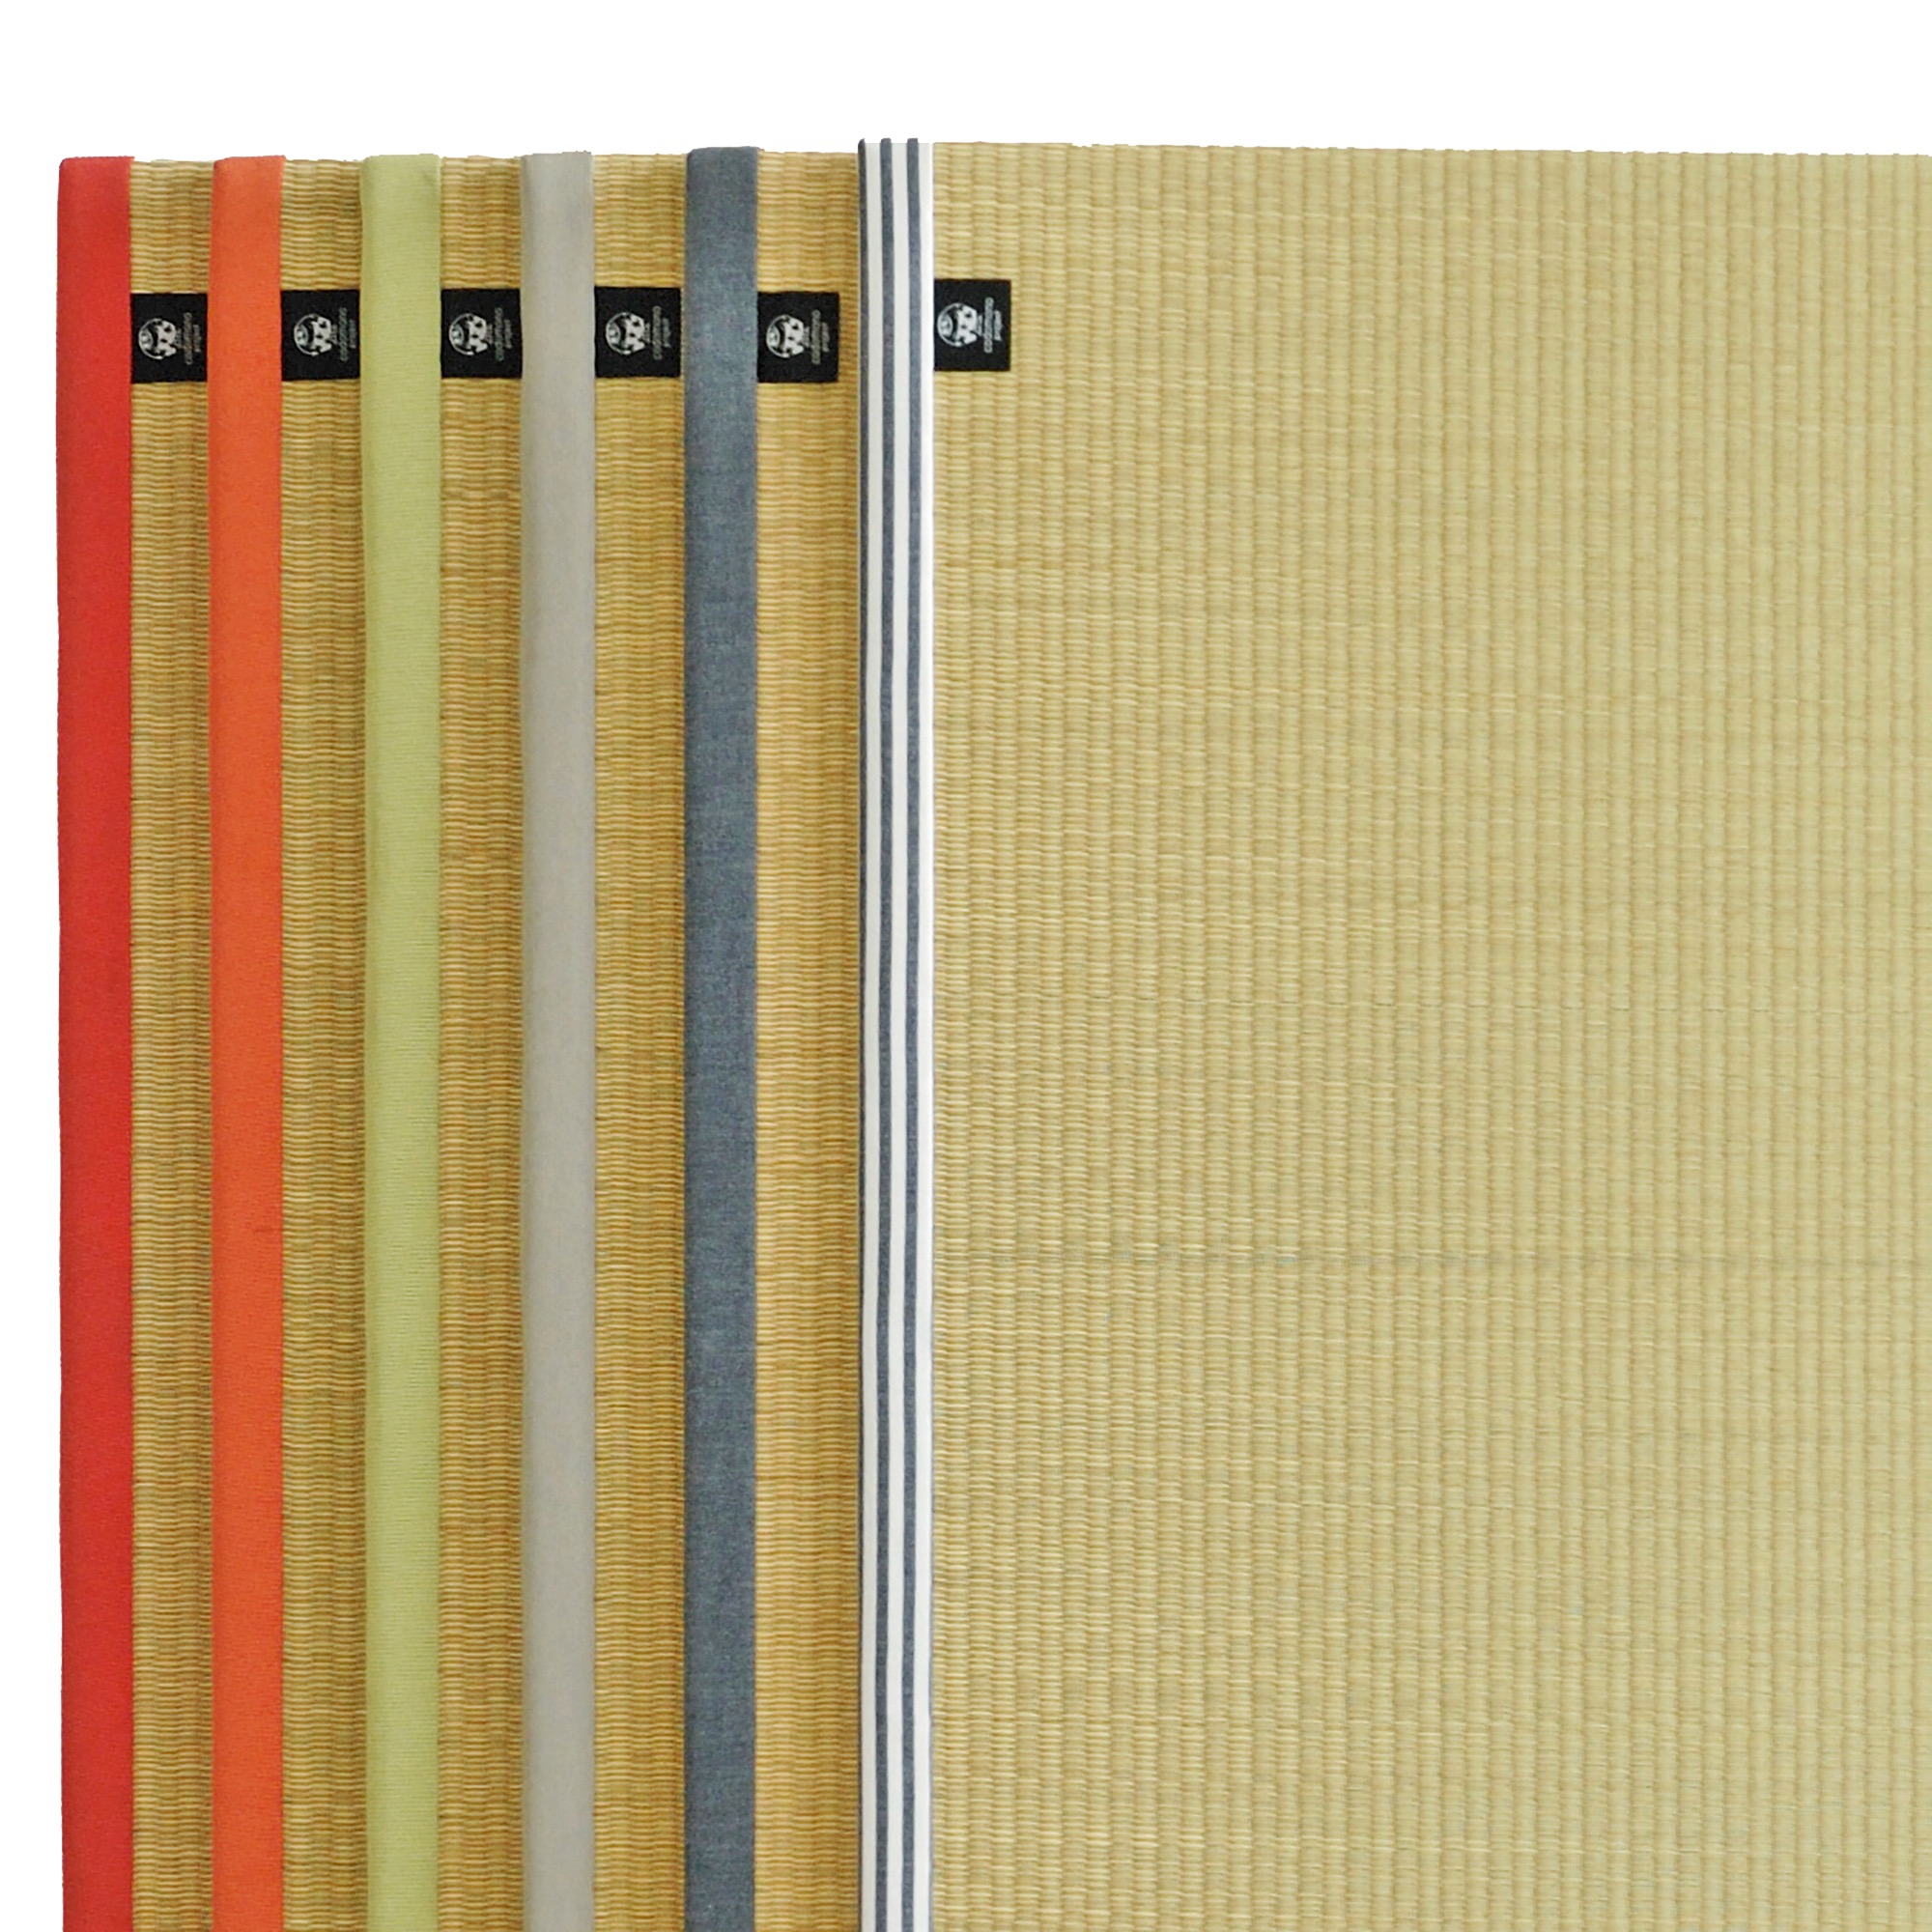 布縁の置き畳 半畳サイズ FL-TM002-01-G055 6種類の縁布